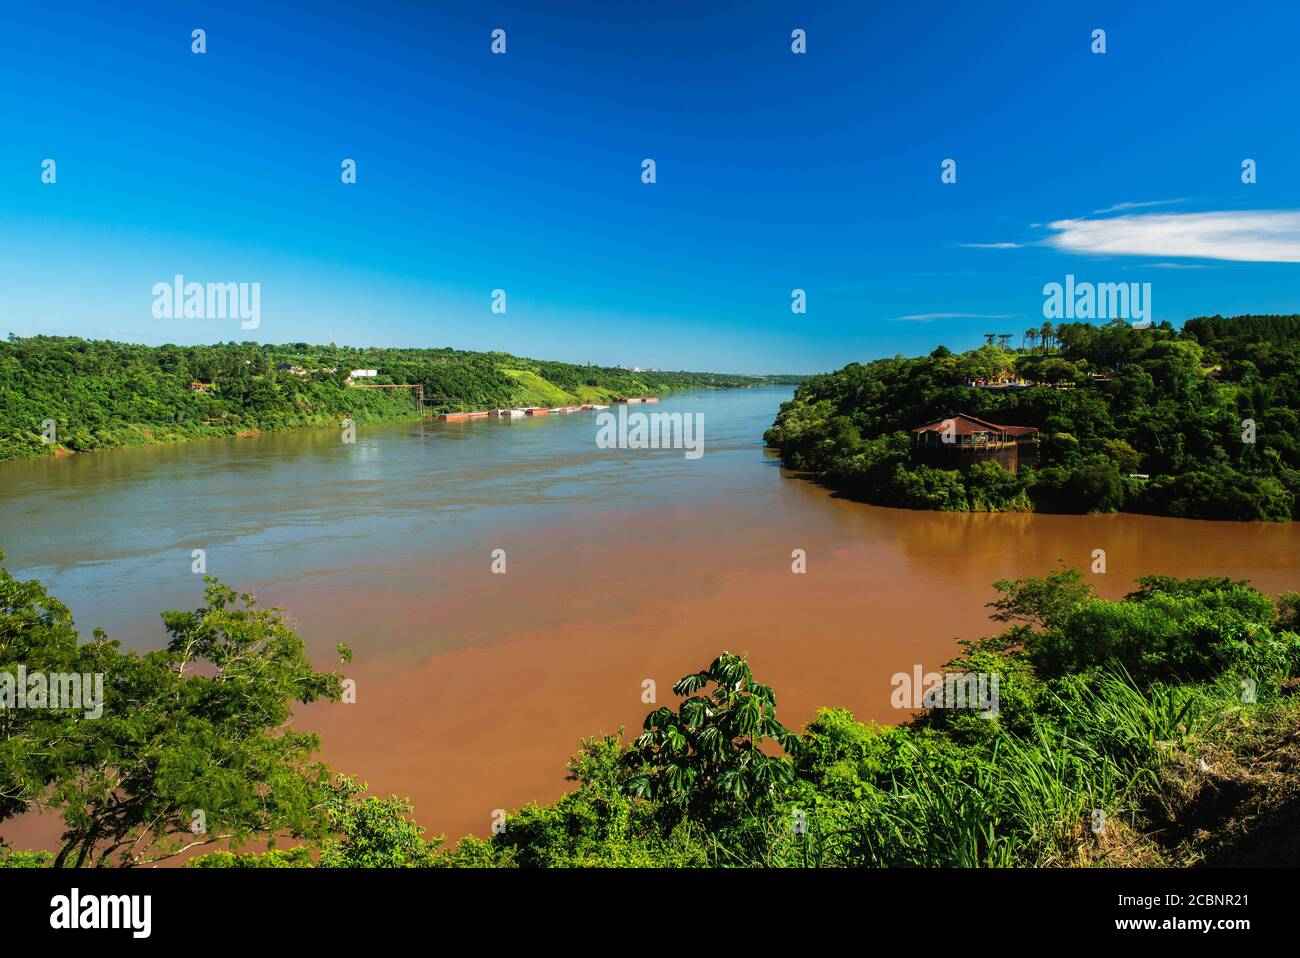 Triple área fronteriza a lo largo del cruce de Paraguay, Argentina y Brasil, donde convergen los ríos Iguazú y Paraná, Iguazú, Argentina Foto de stock